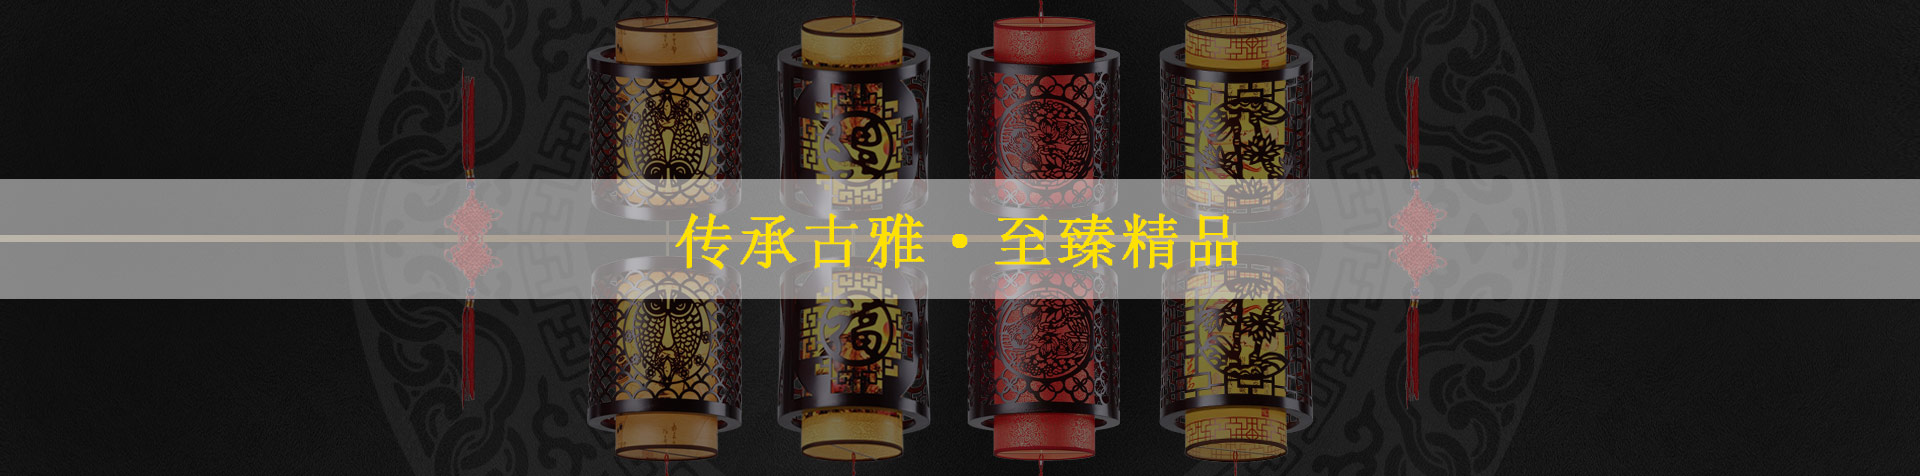 中式茶樓點心——以廣東茶樓為例 